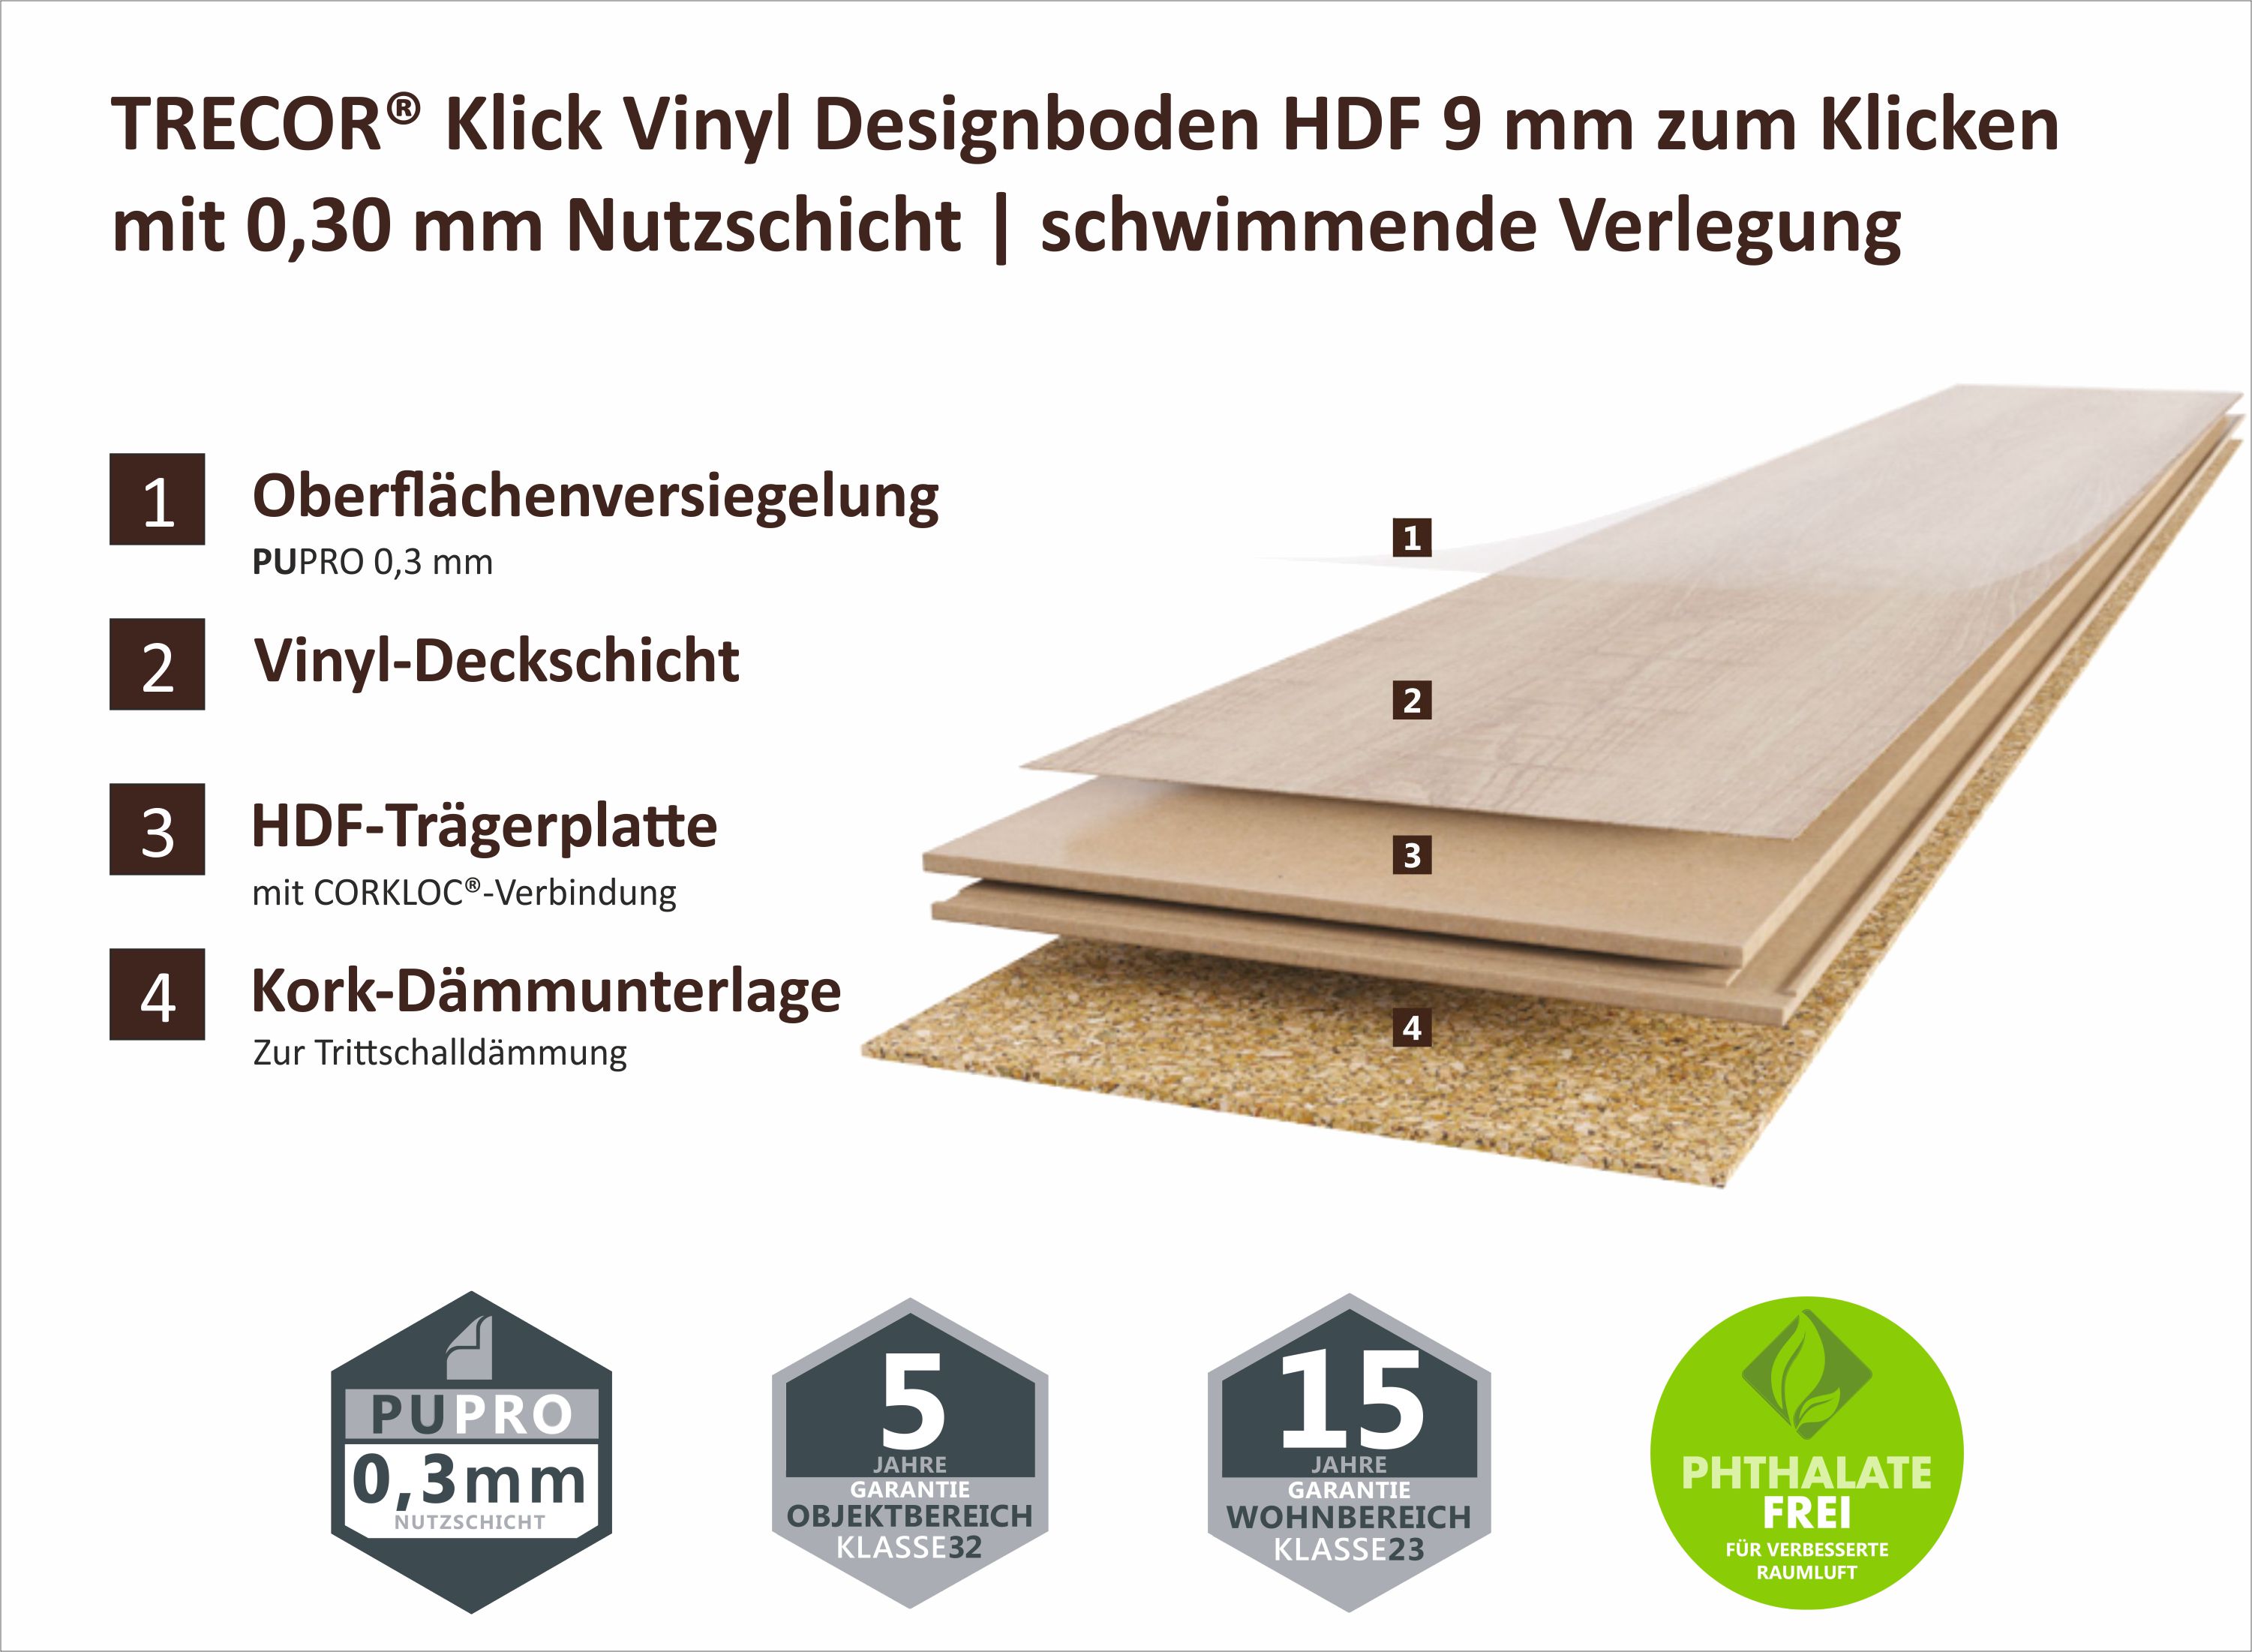 Vinyl Designboden Pinie LHD 9 mm Stark mit 0,3 mm Nutzschicht